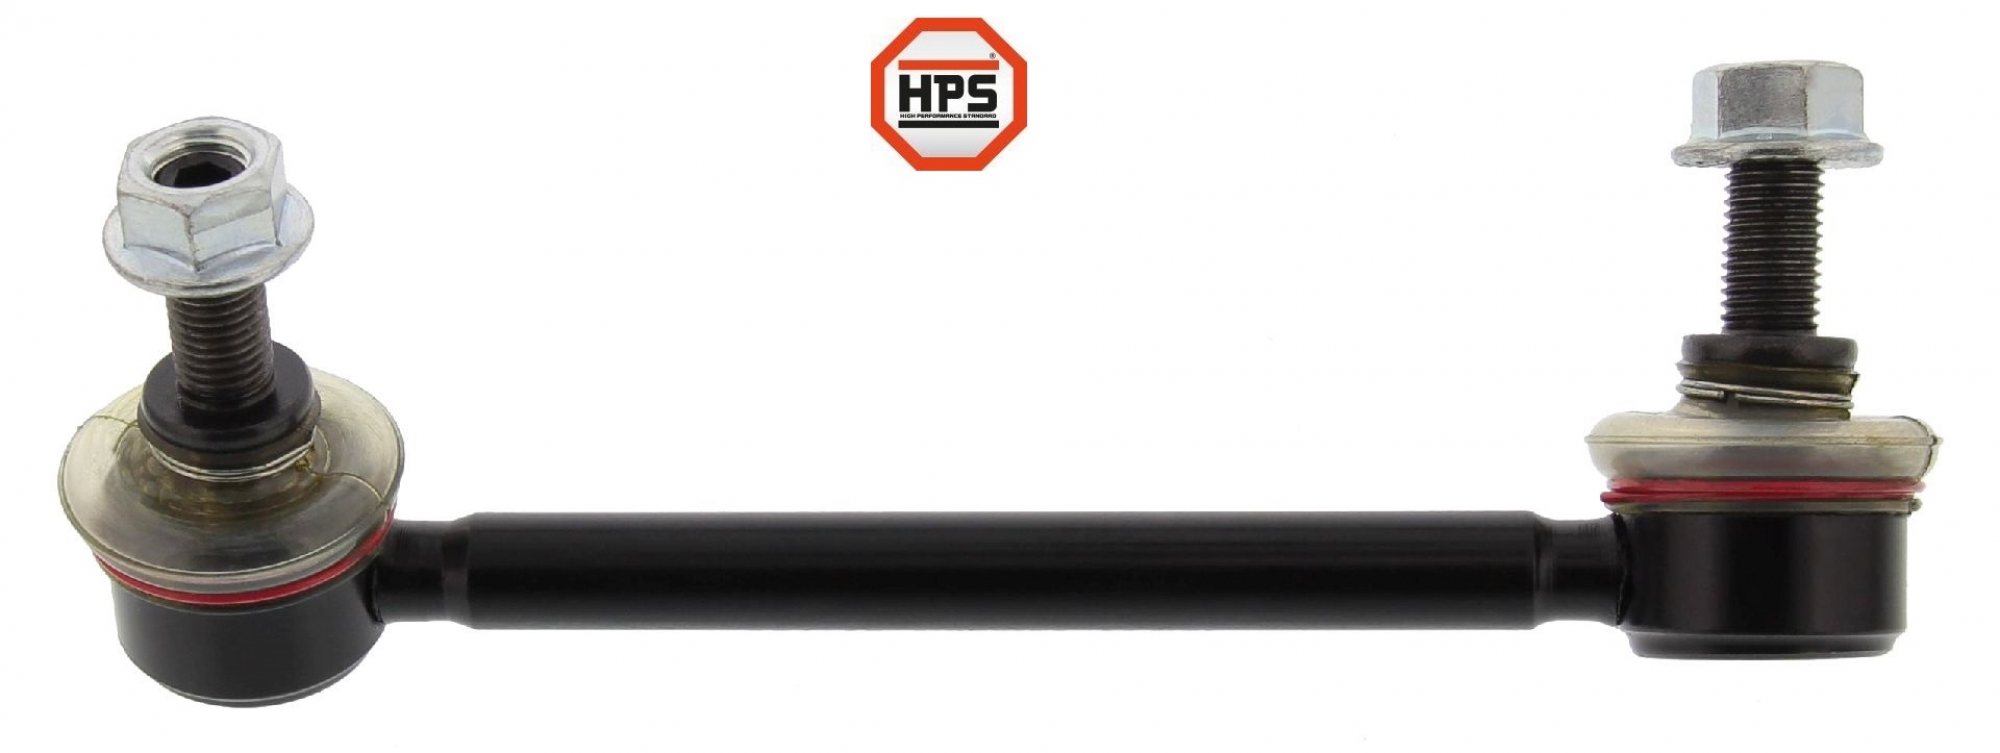 HPS-Koppelstange, verstärkt, HA rechts, MAZDA 3, 6, CX 5